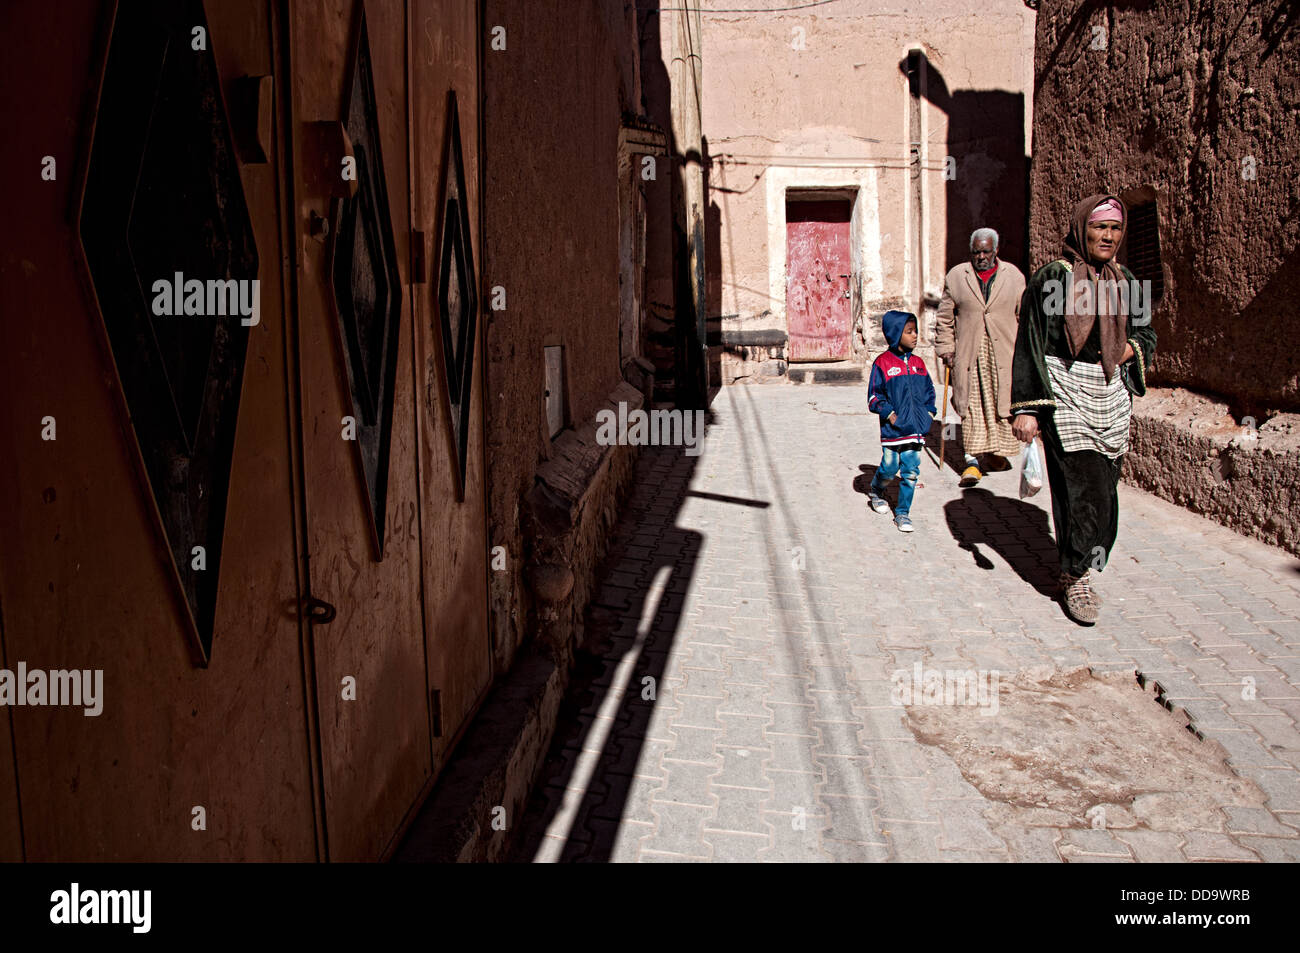 Balades en famille dans les rues de la mellah (quartier juif). Ouarzazate, Maroc Banque D'Images